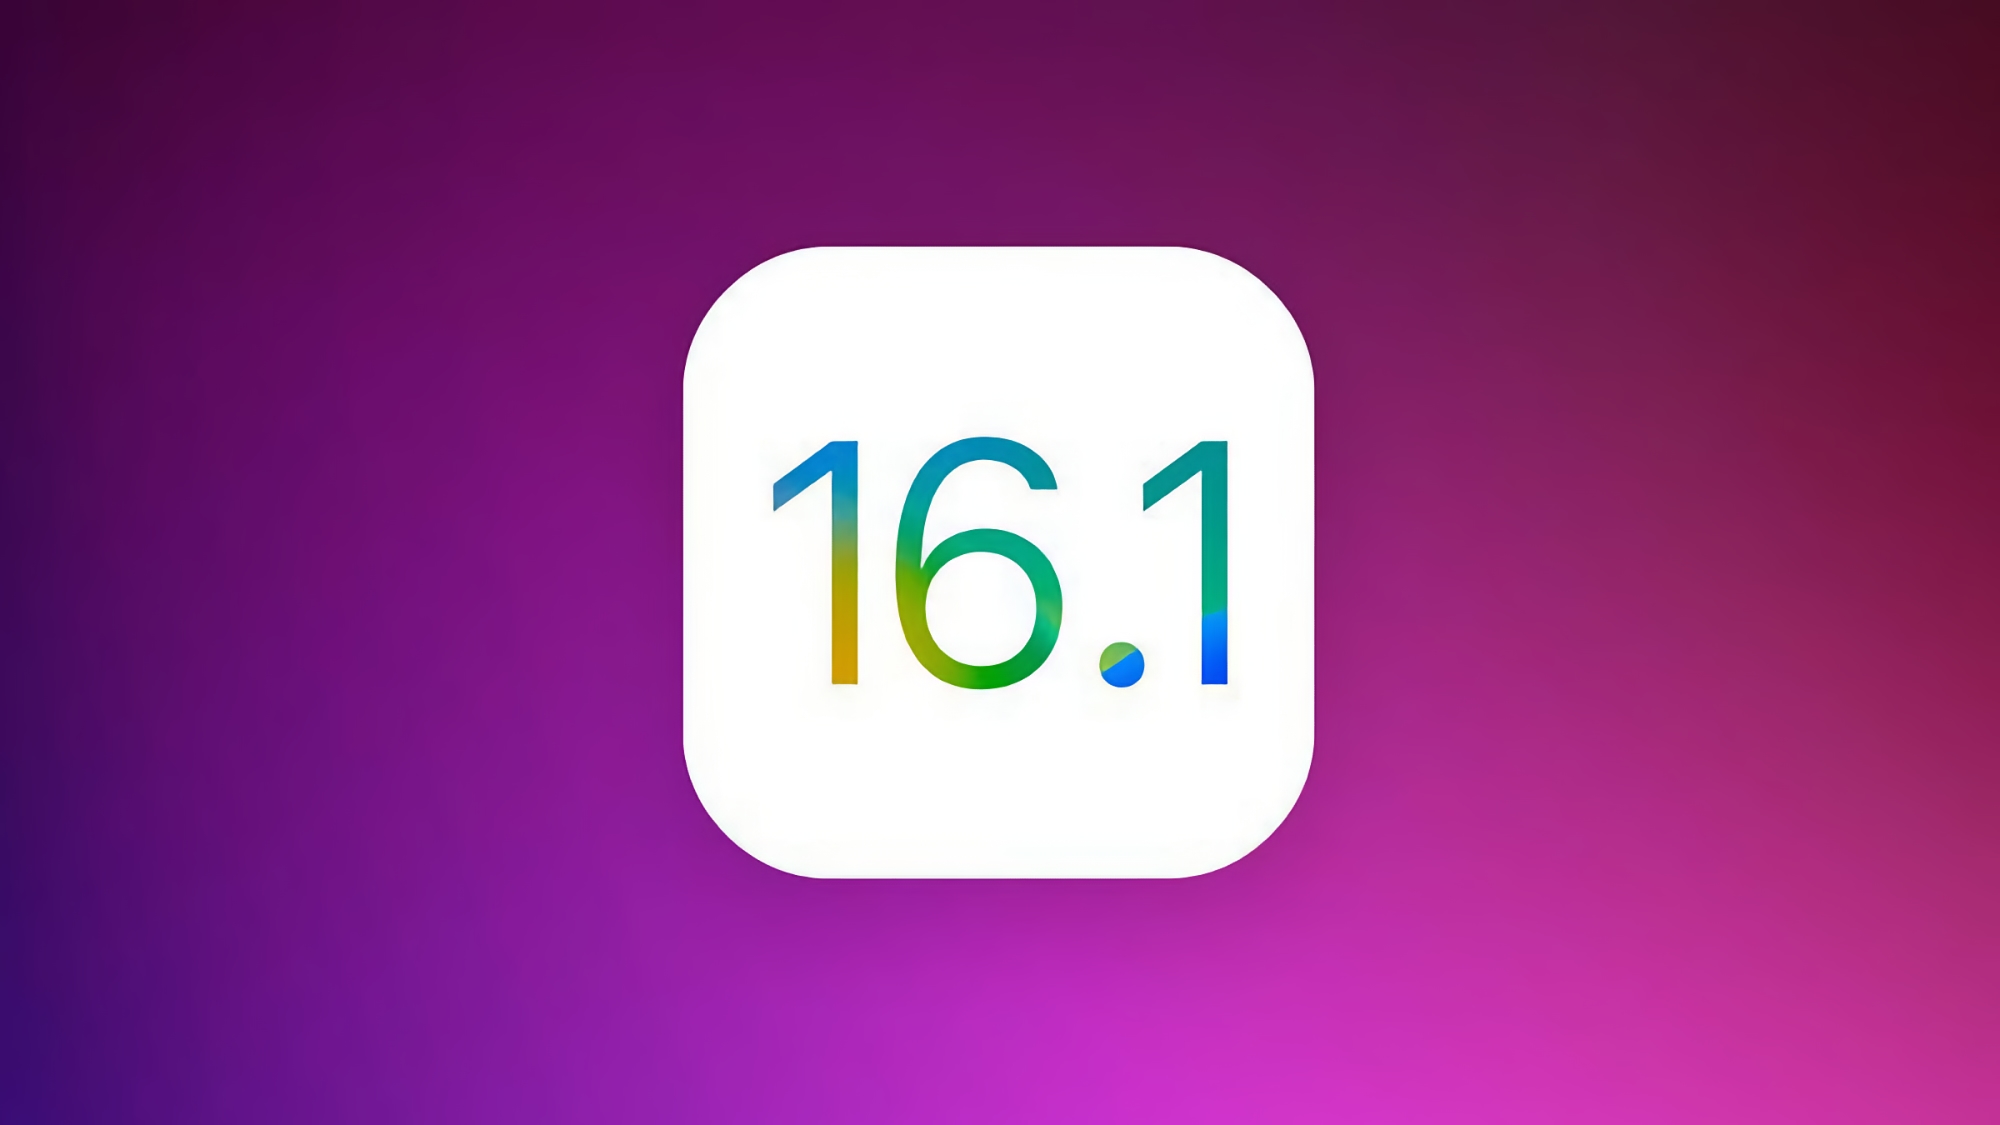 Apple ha anunciado iOS 16.1 beta 2: Dinos qué novedades trae el firmware